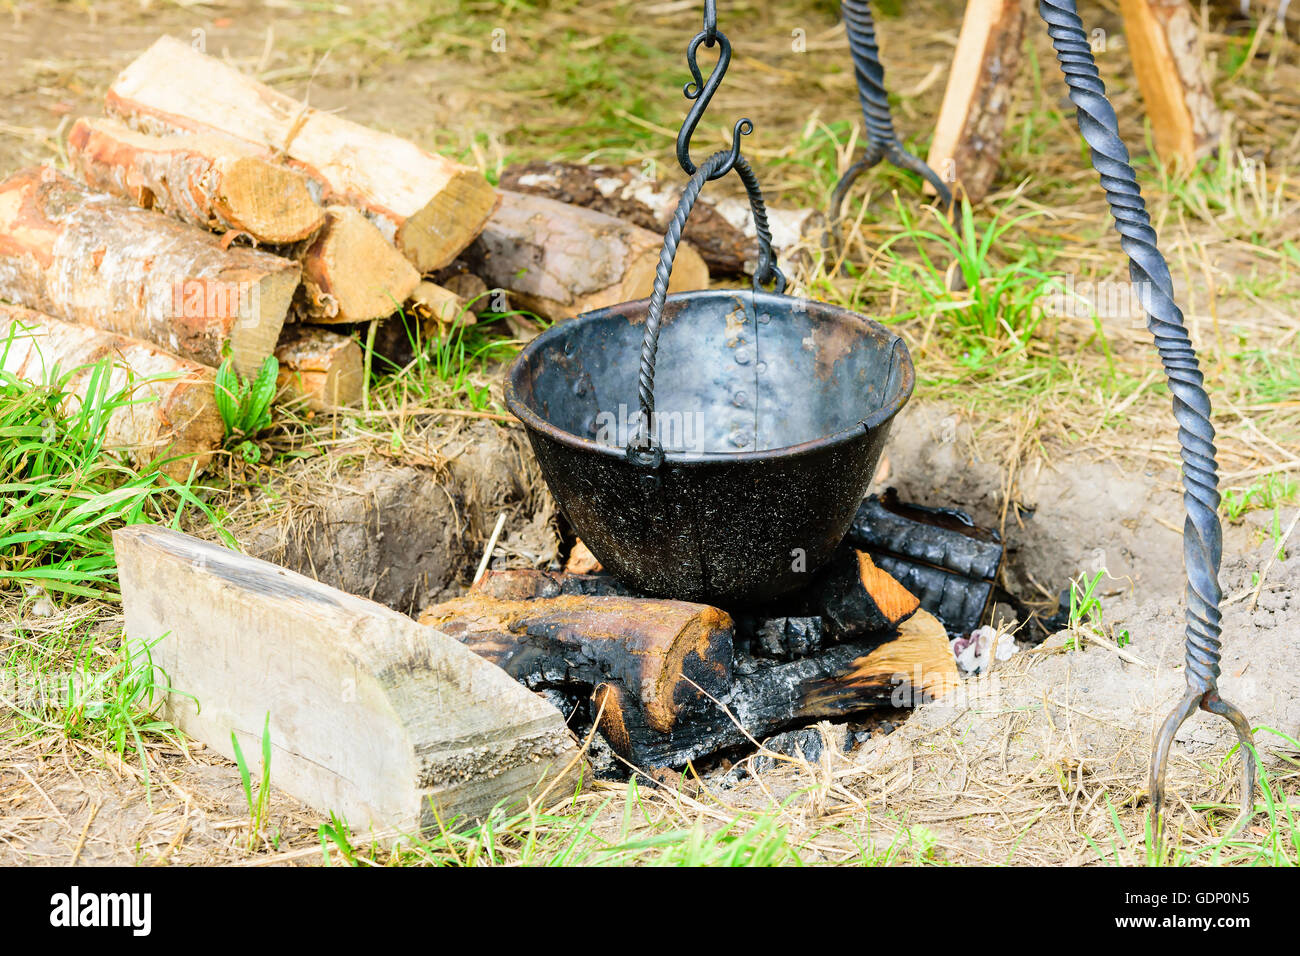 Leere im freien Kochtopf schwebt über verbranntem Holz und Asche. Topf ist handgefertigt geschwärztem Eisen mit Nieten. Stockfoto